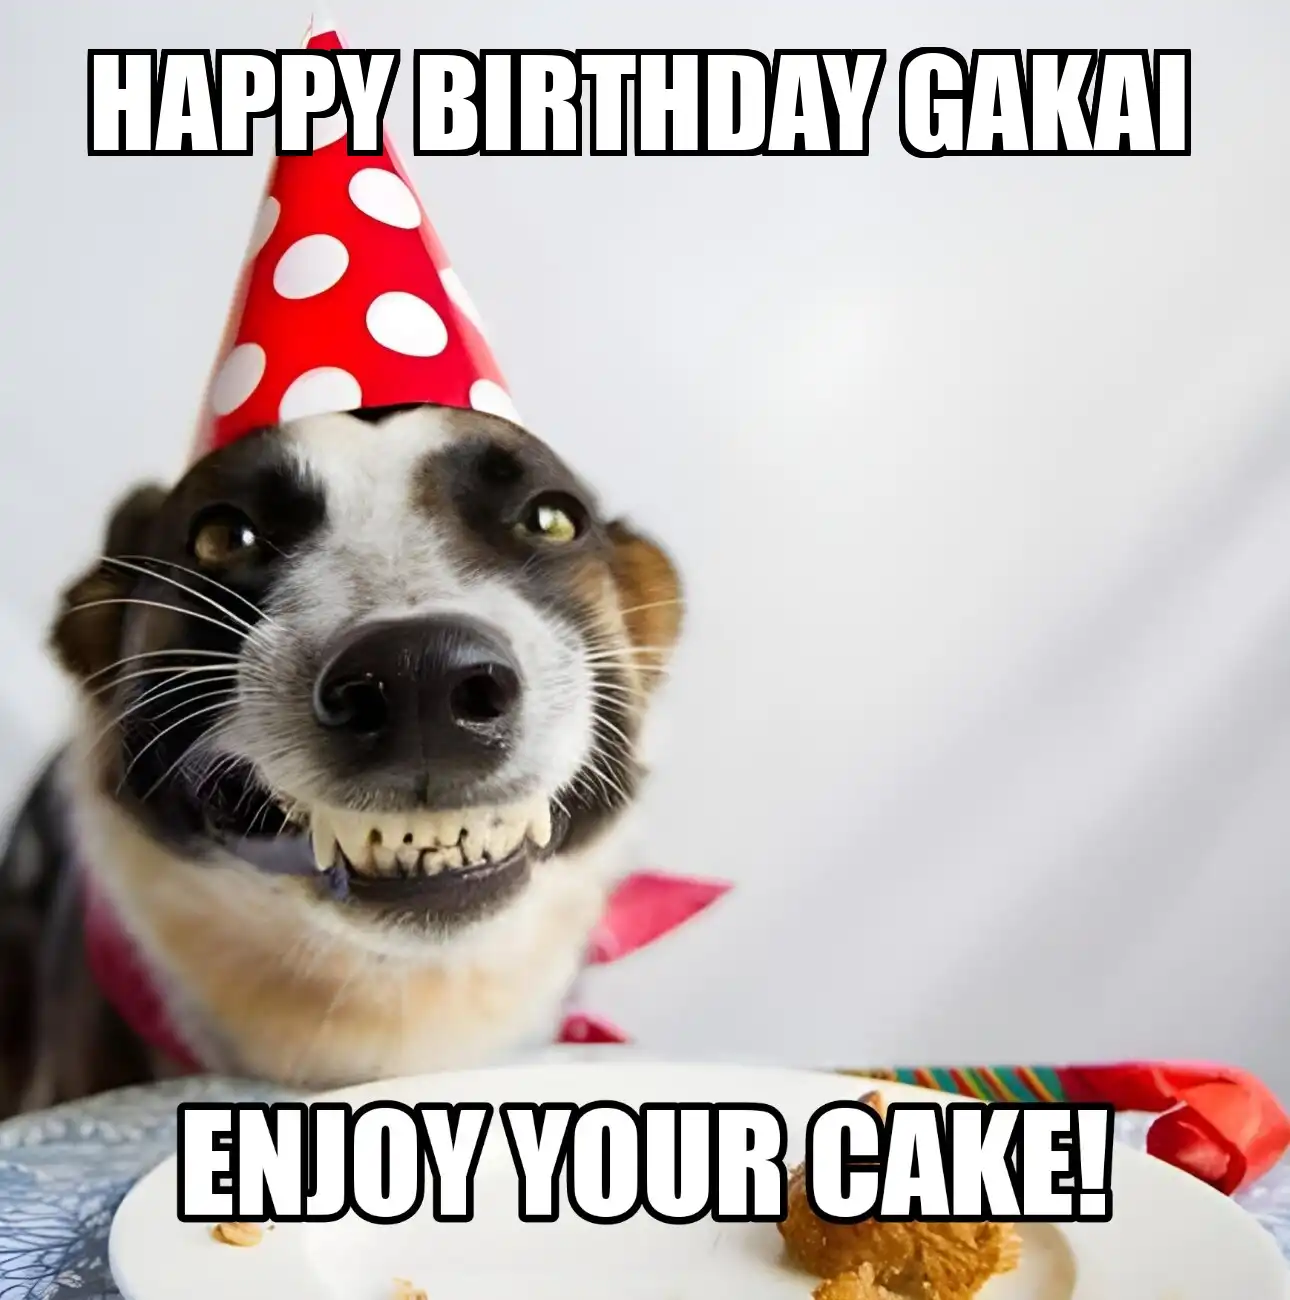 Happy Birthday Gakai Enjoy Your Cake Dog Meme